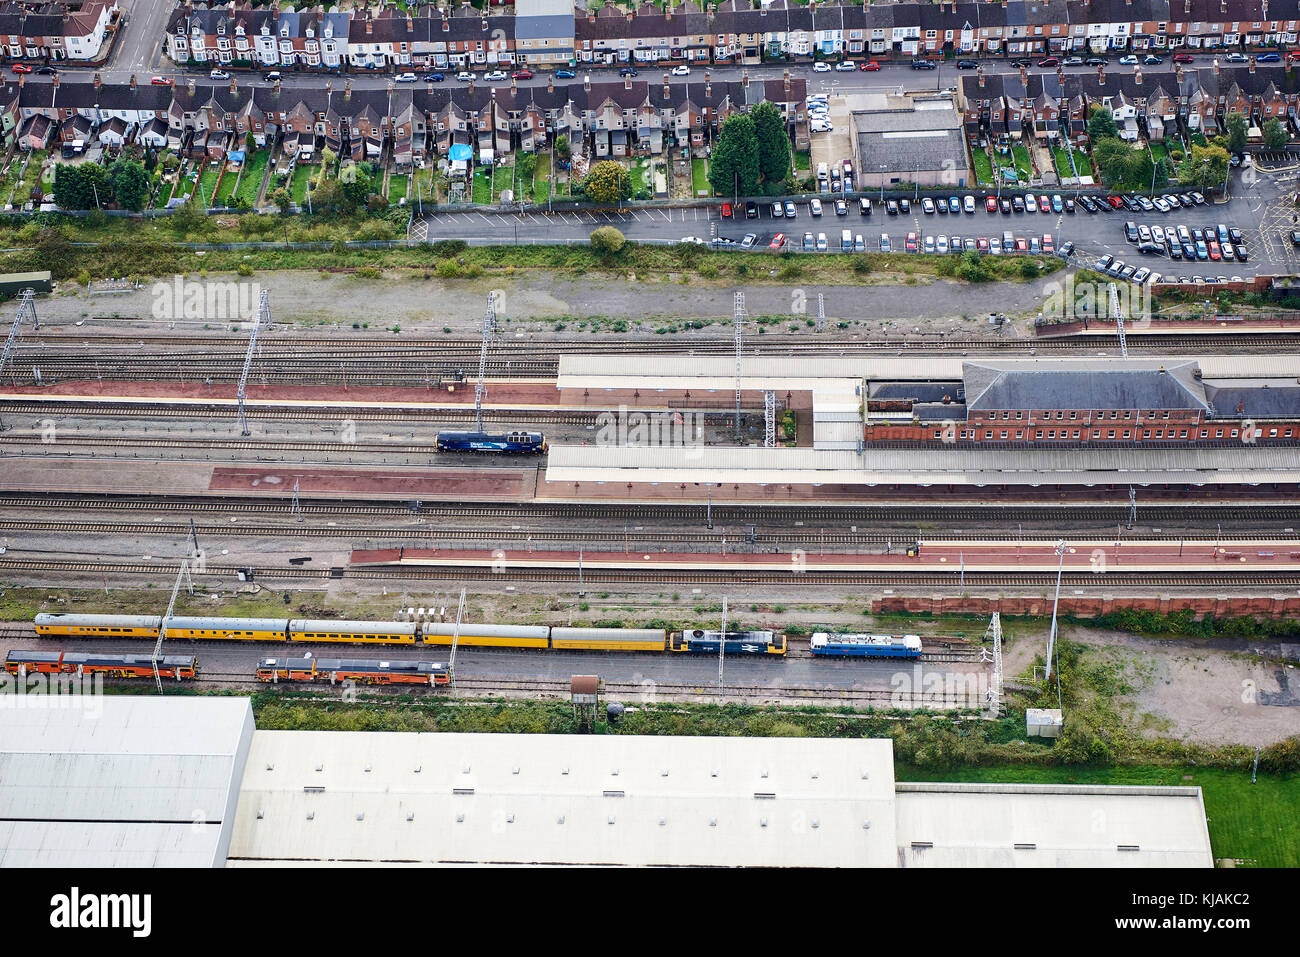 Una vista aérea de la estación de tren de Rugby, Warwickshire, West Midlands, Reino Unido Foto de stock